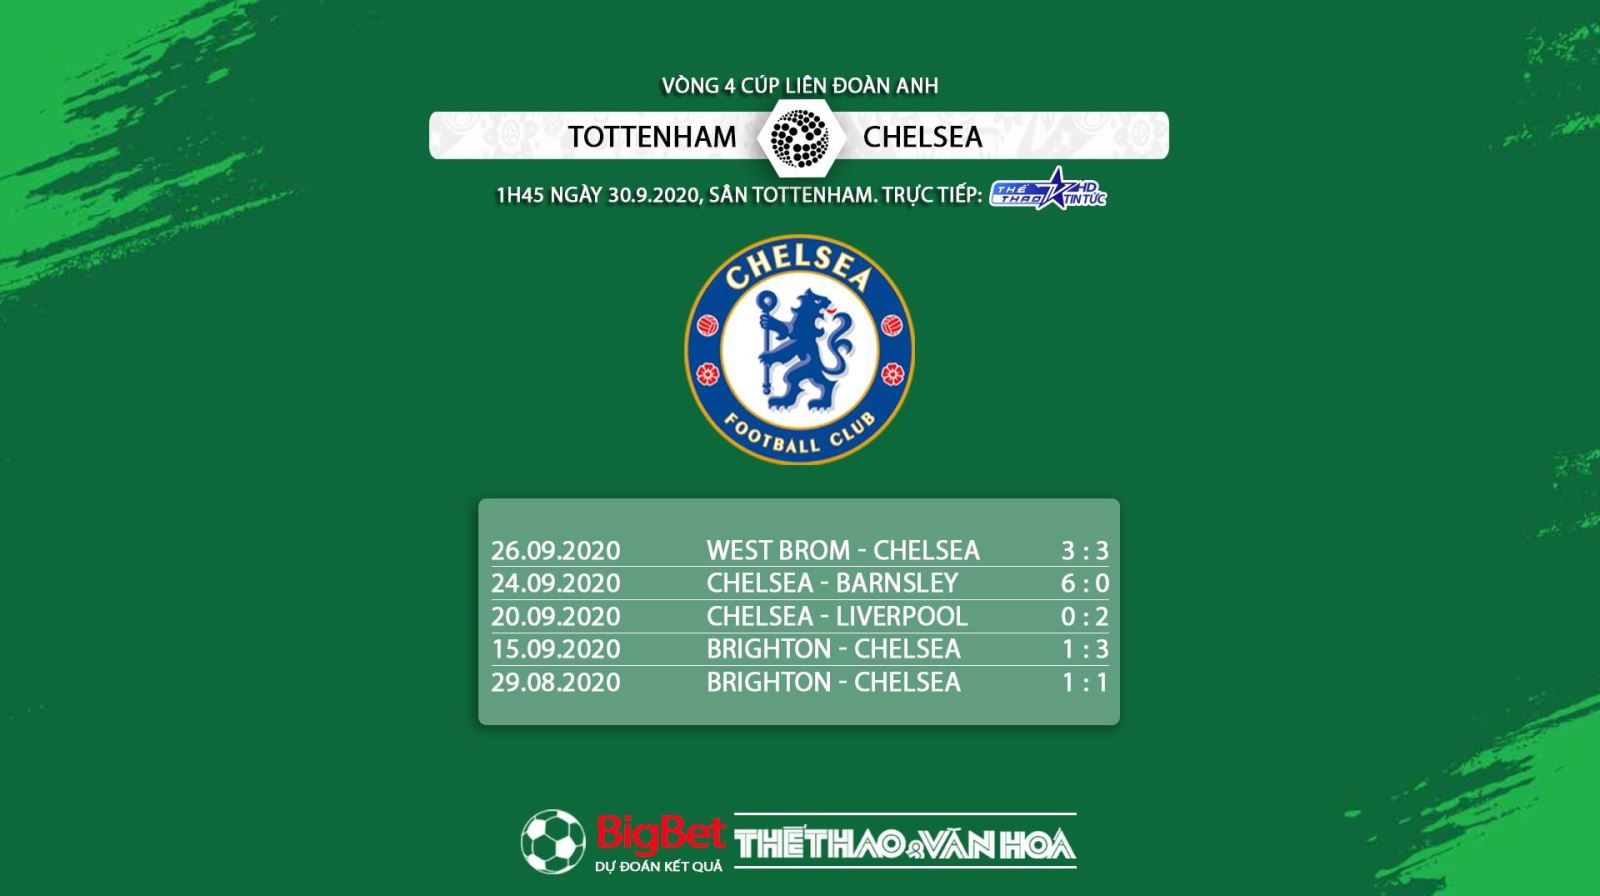 Keo nha cai, nhận định kết quả, Tottenham vs Chelsea, Vòng 4 Cúp Liên đoàn Anh, nhận định bóng đá Chelsea đấu với Tottenham, kèo Chelsea, kèo Tottenham, trực tiếp Tottenham vs Chelsea